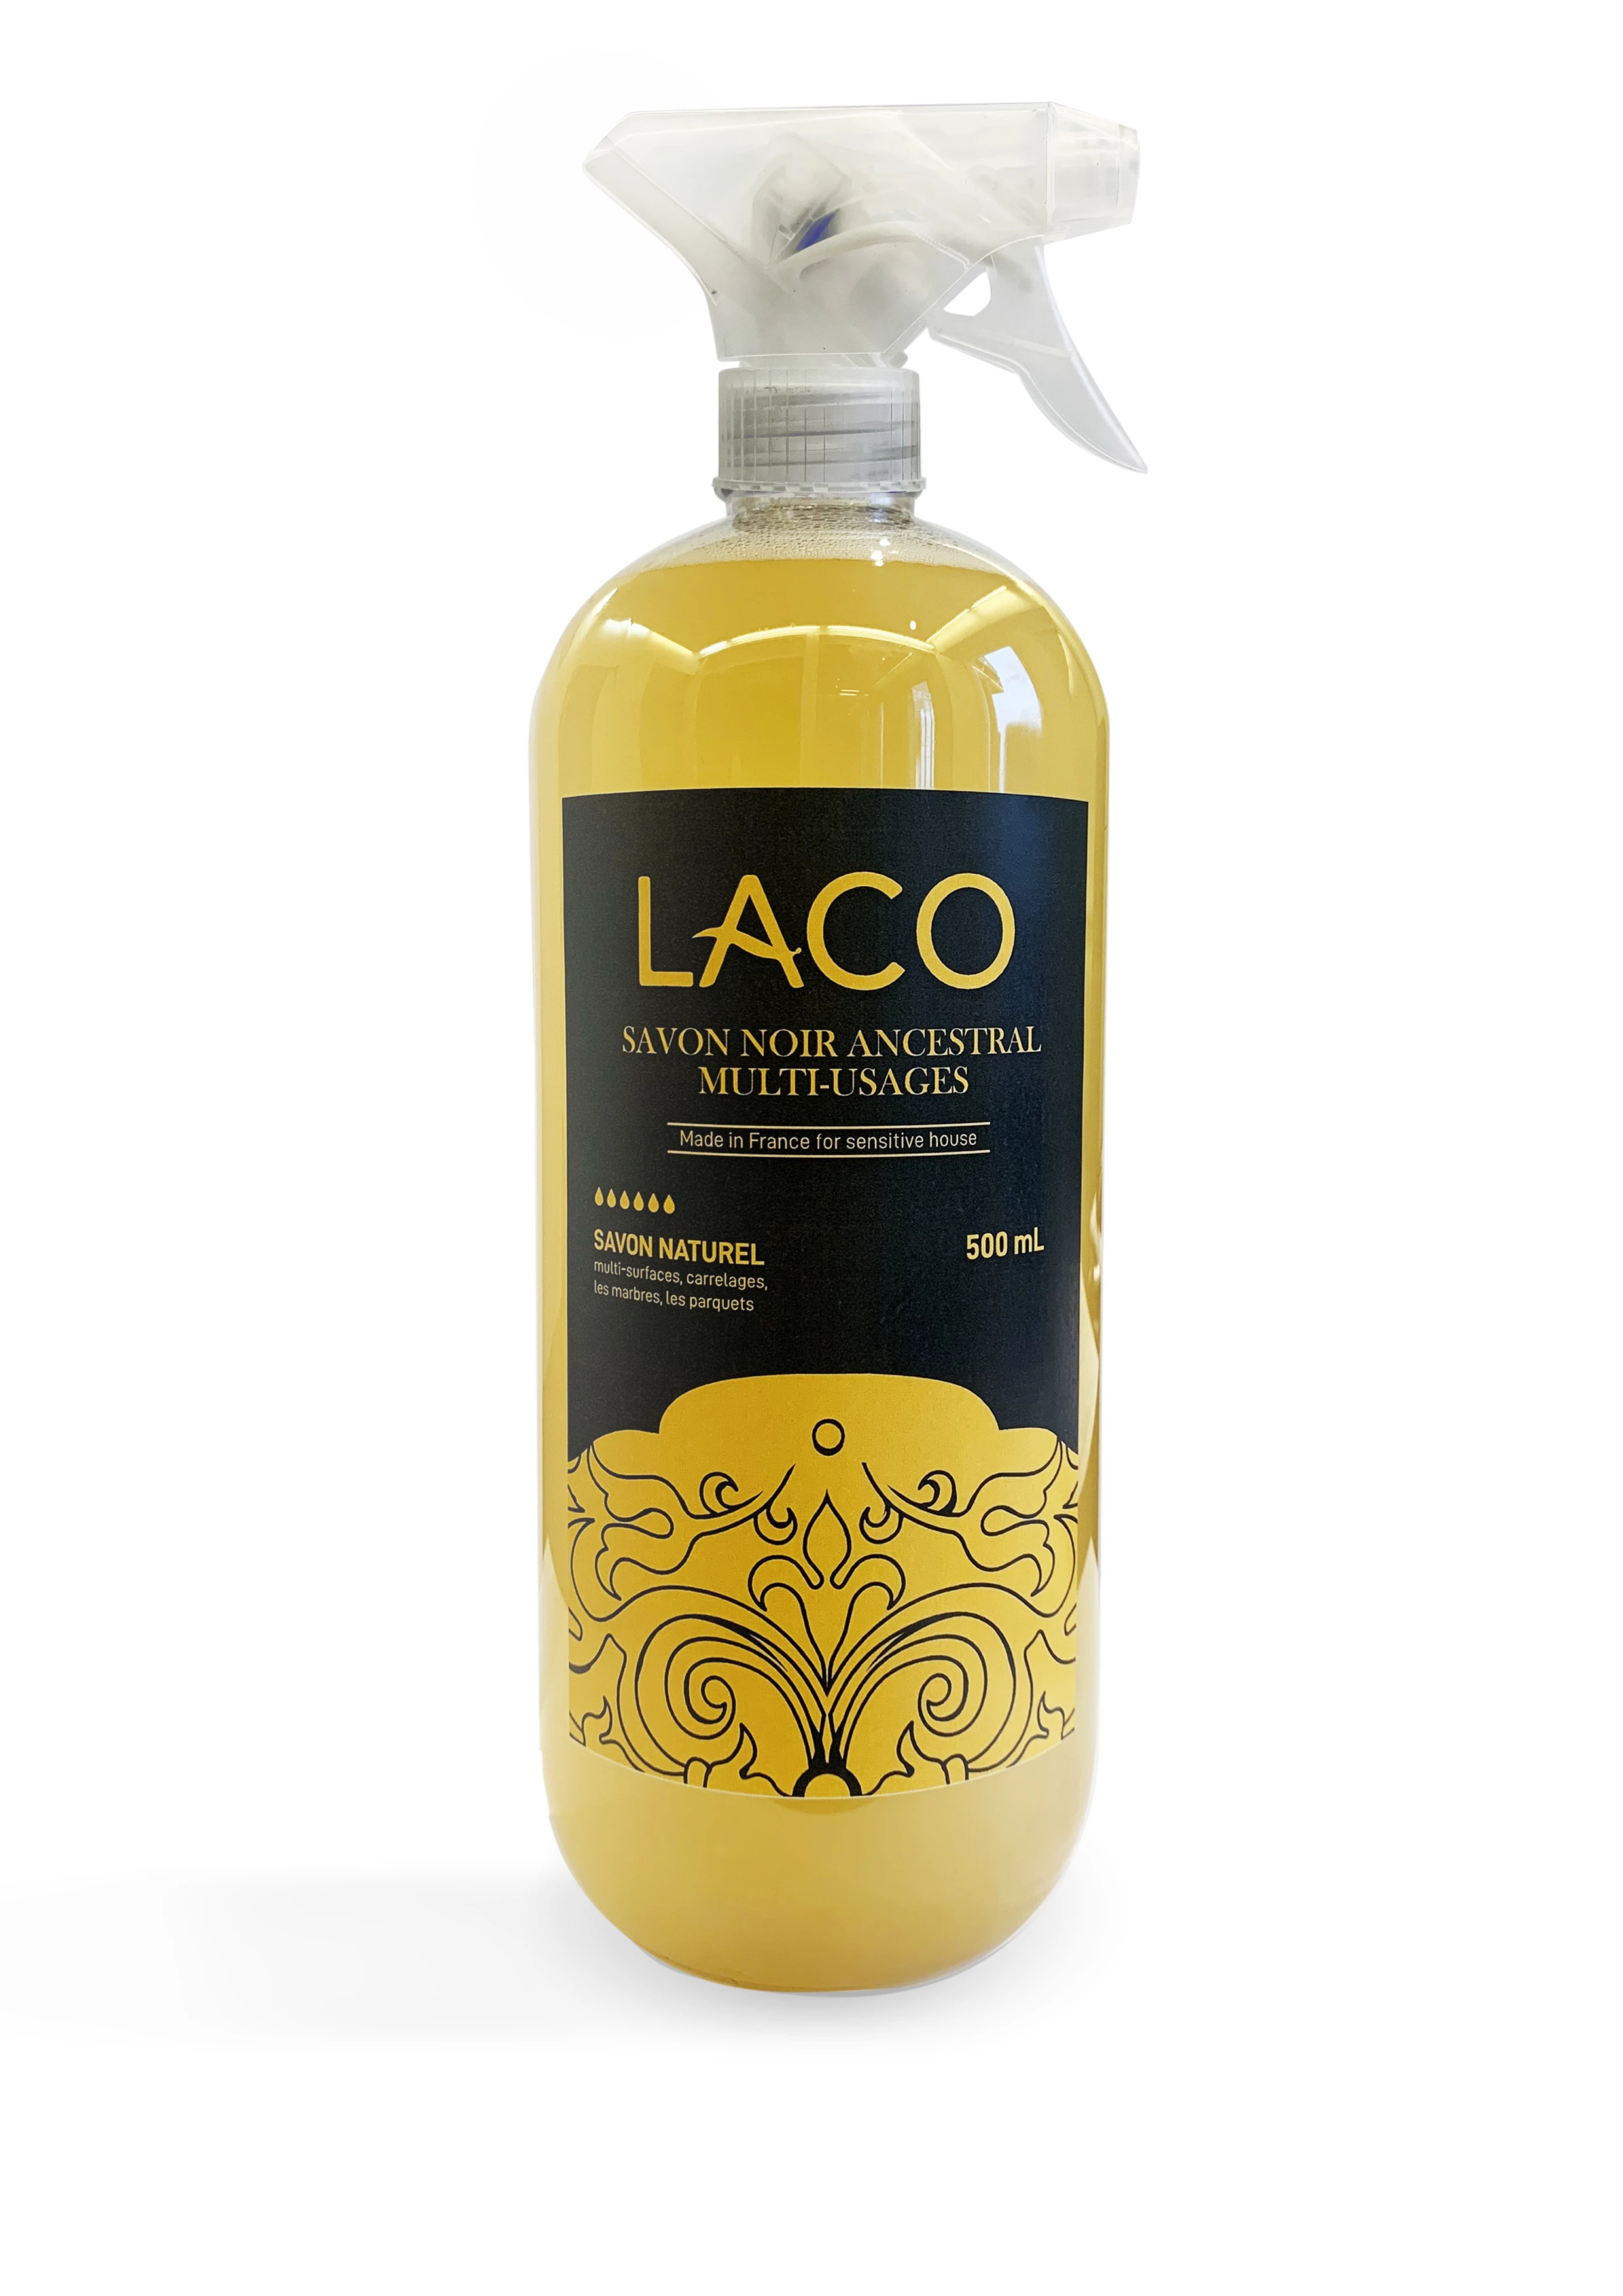 Ultra-Nourishing and Multi-Purpose Ancestral Black Soap. 1L - LACO